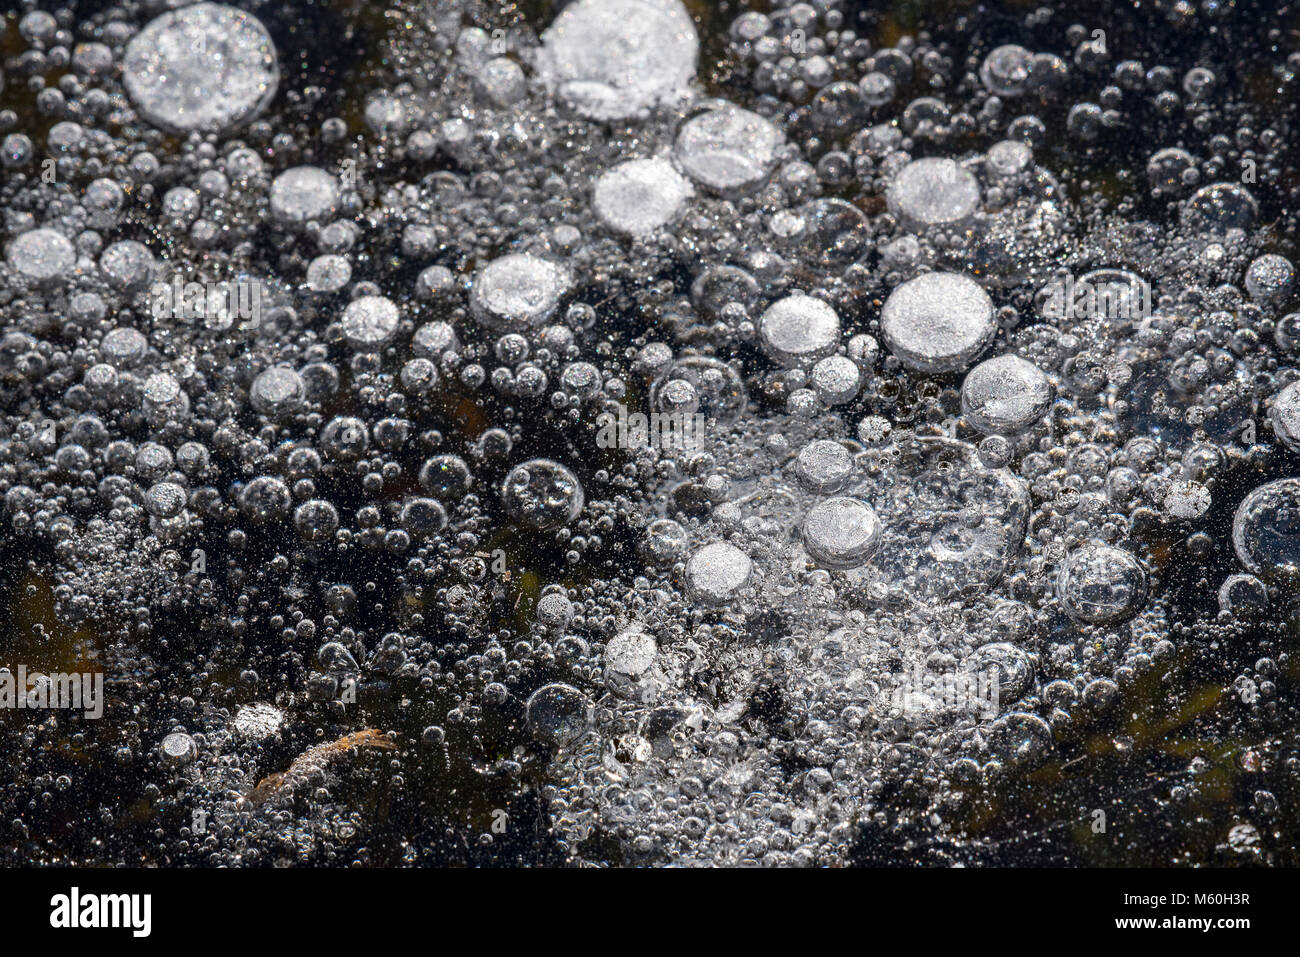 Congelate le bolle di aria nel ghiaccio naturale del laghetto / lago in inverno Foto Stock